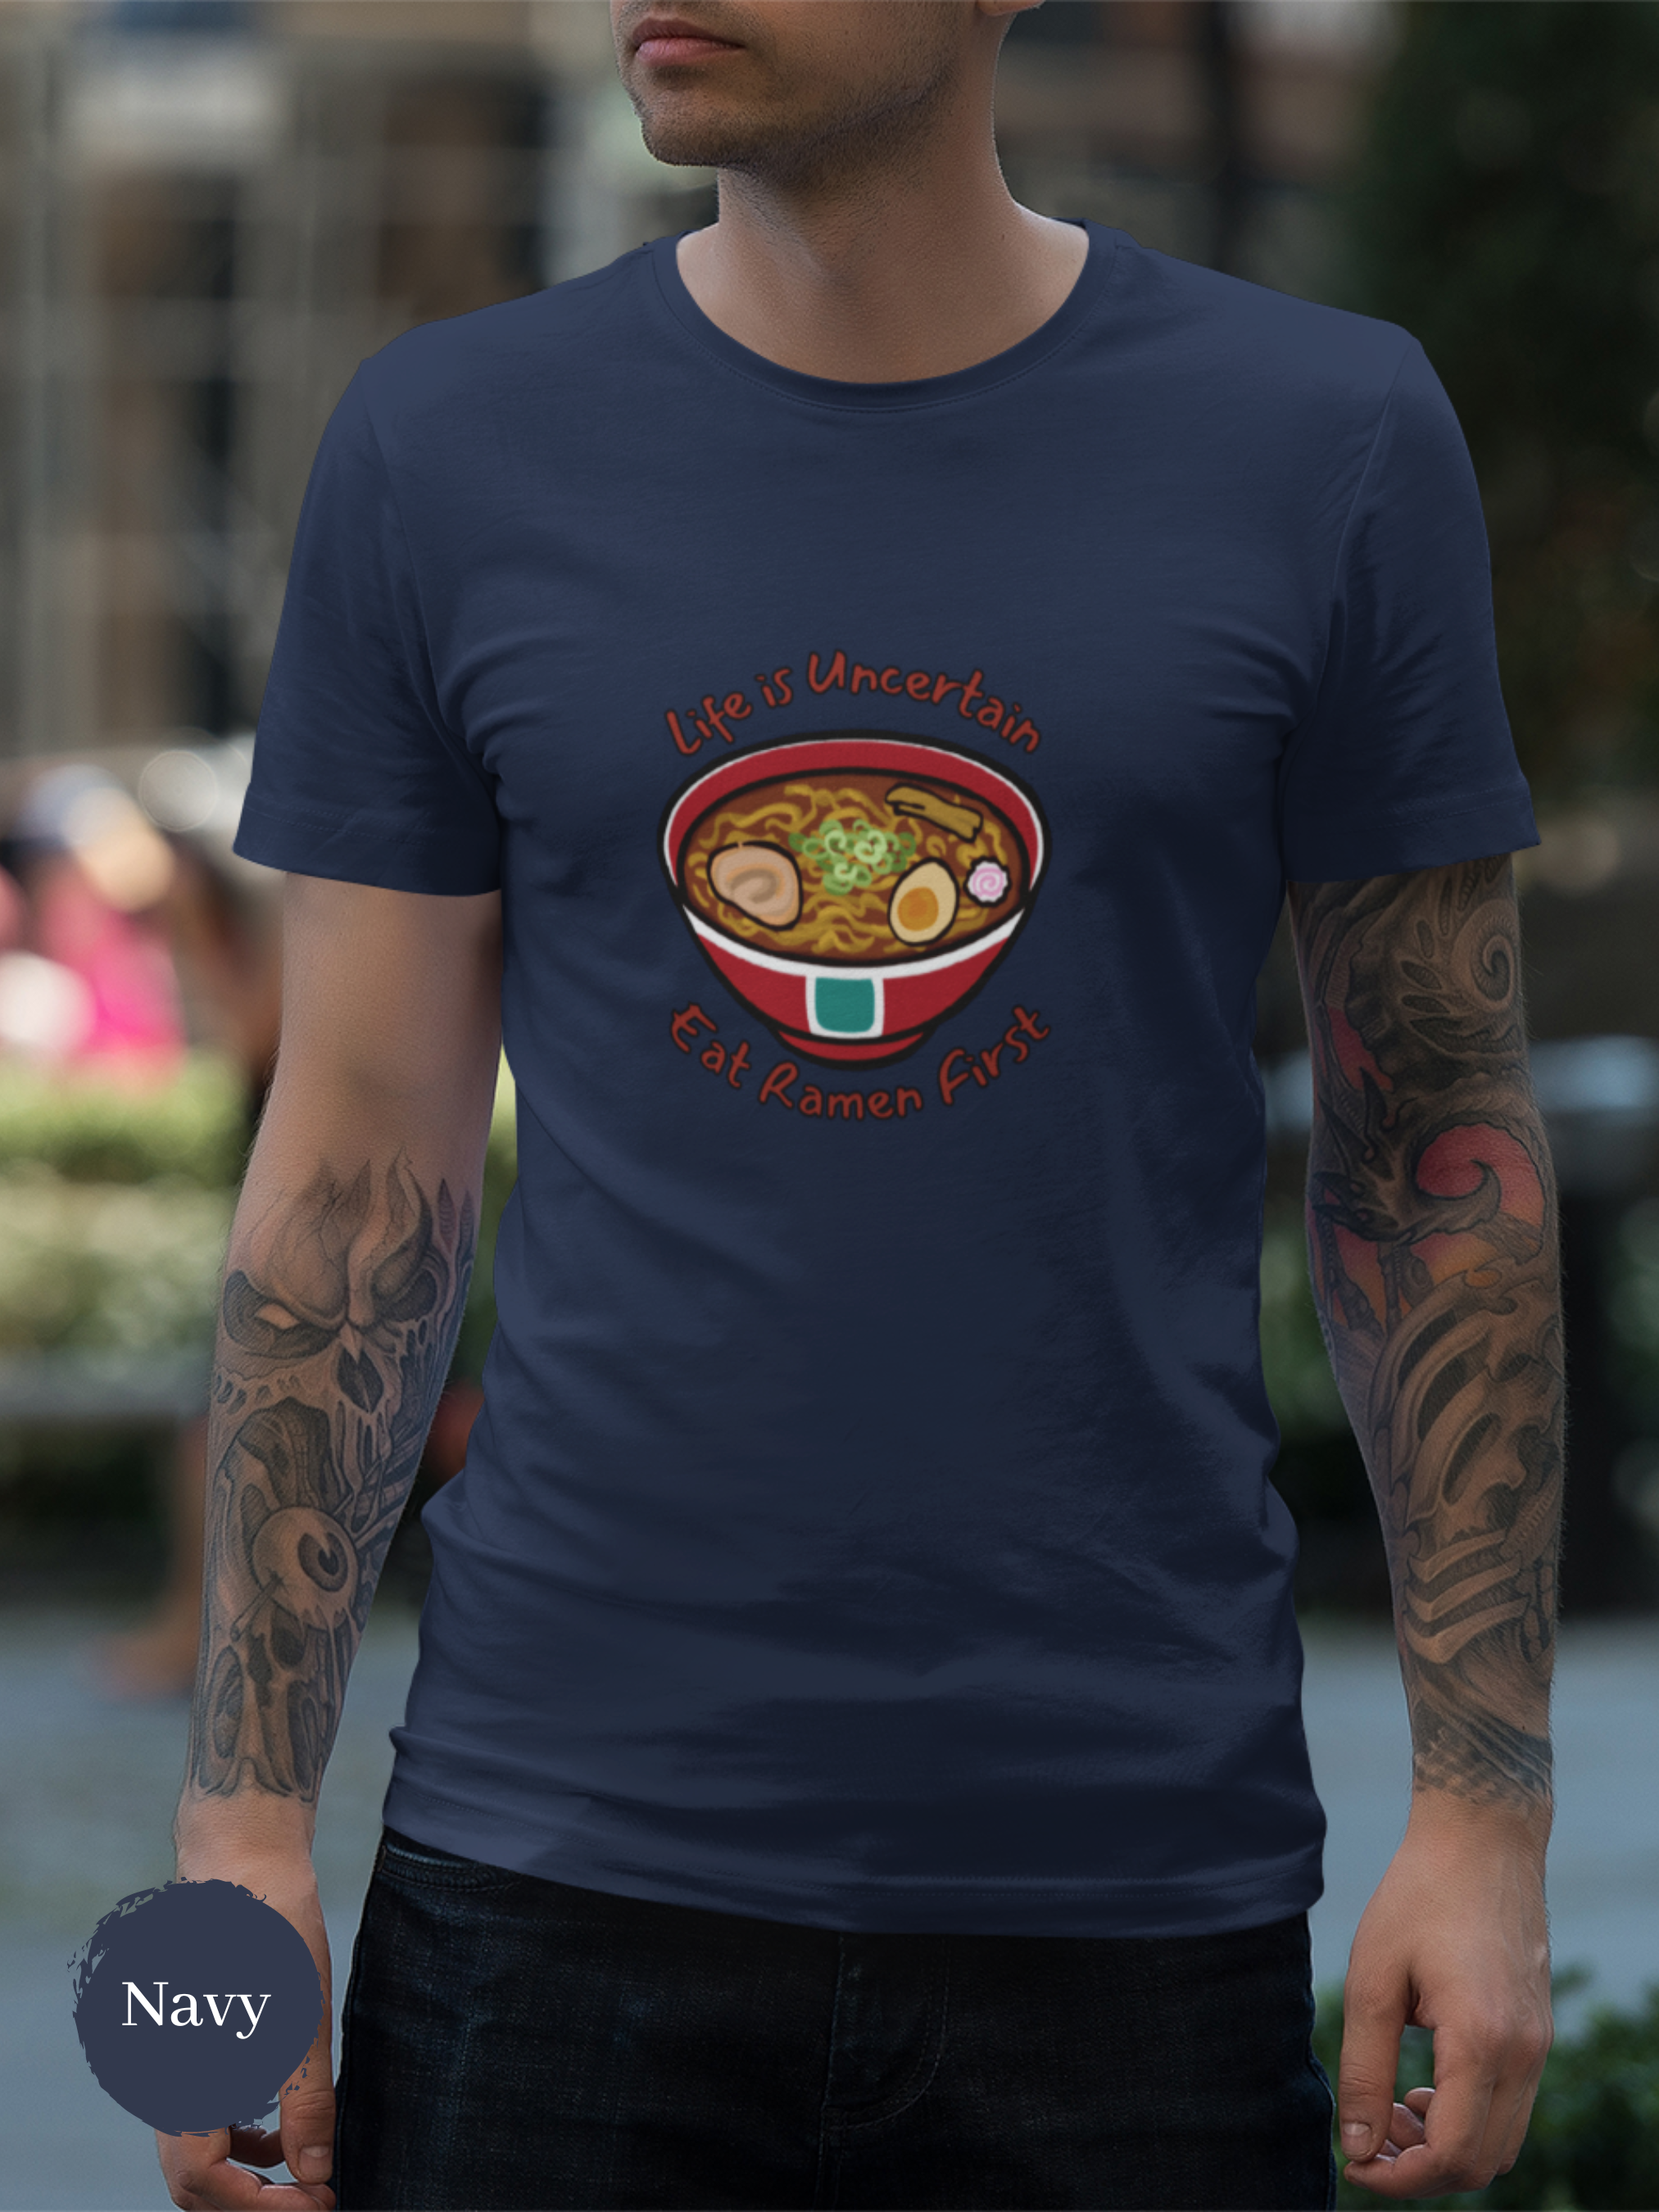 Ramen T-shirt: Life is Uncertain, Eat Ramen First - Japanese Foodie Shirt with Ramen Art